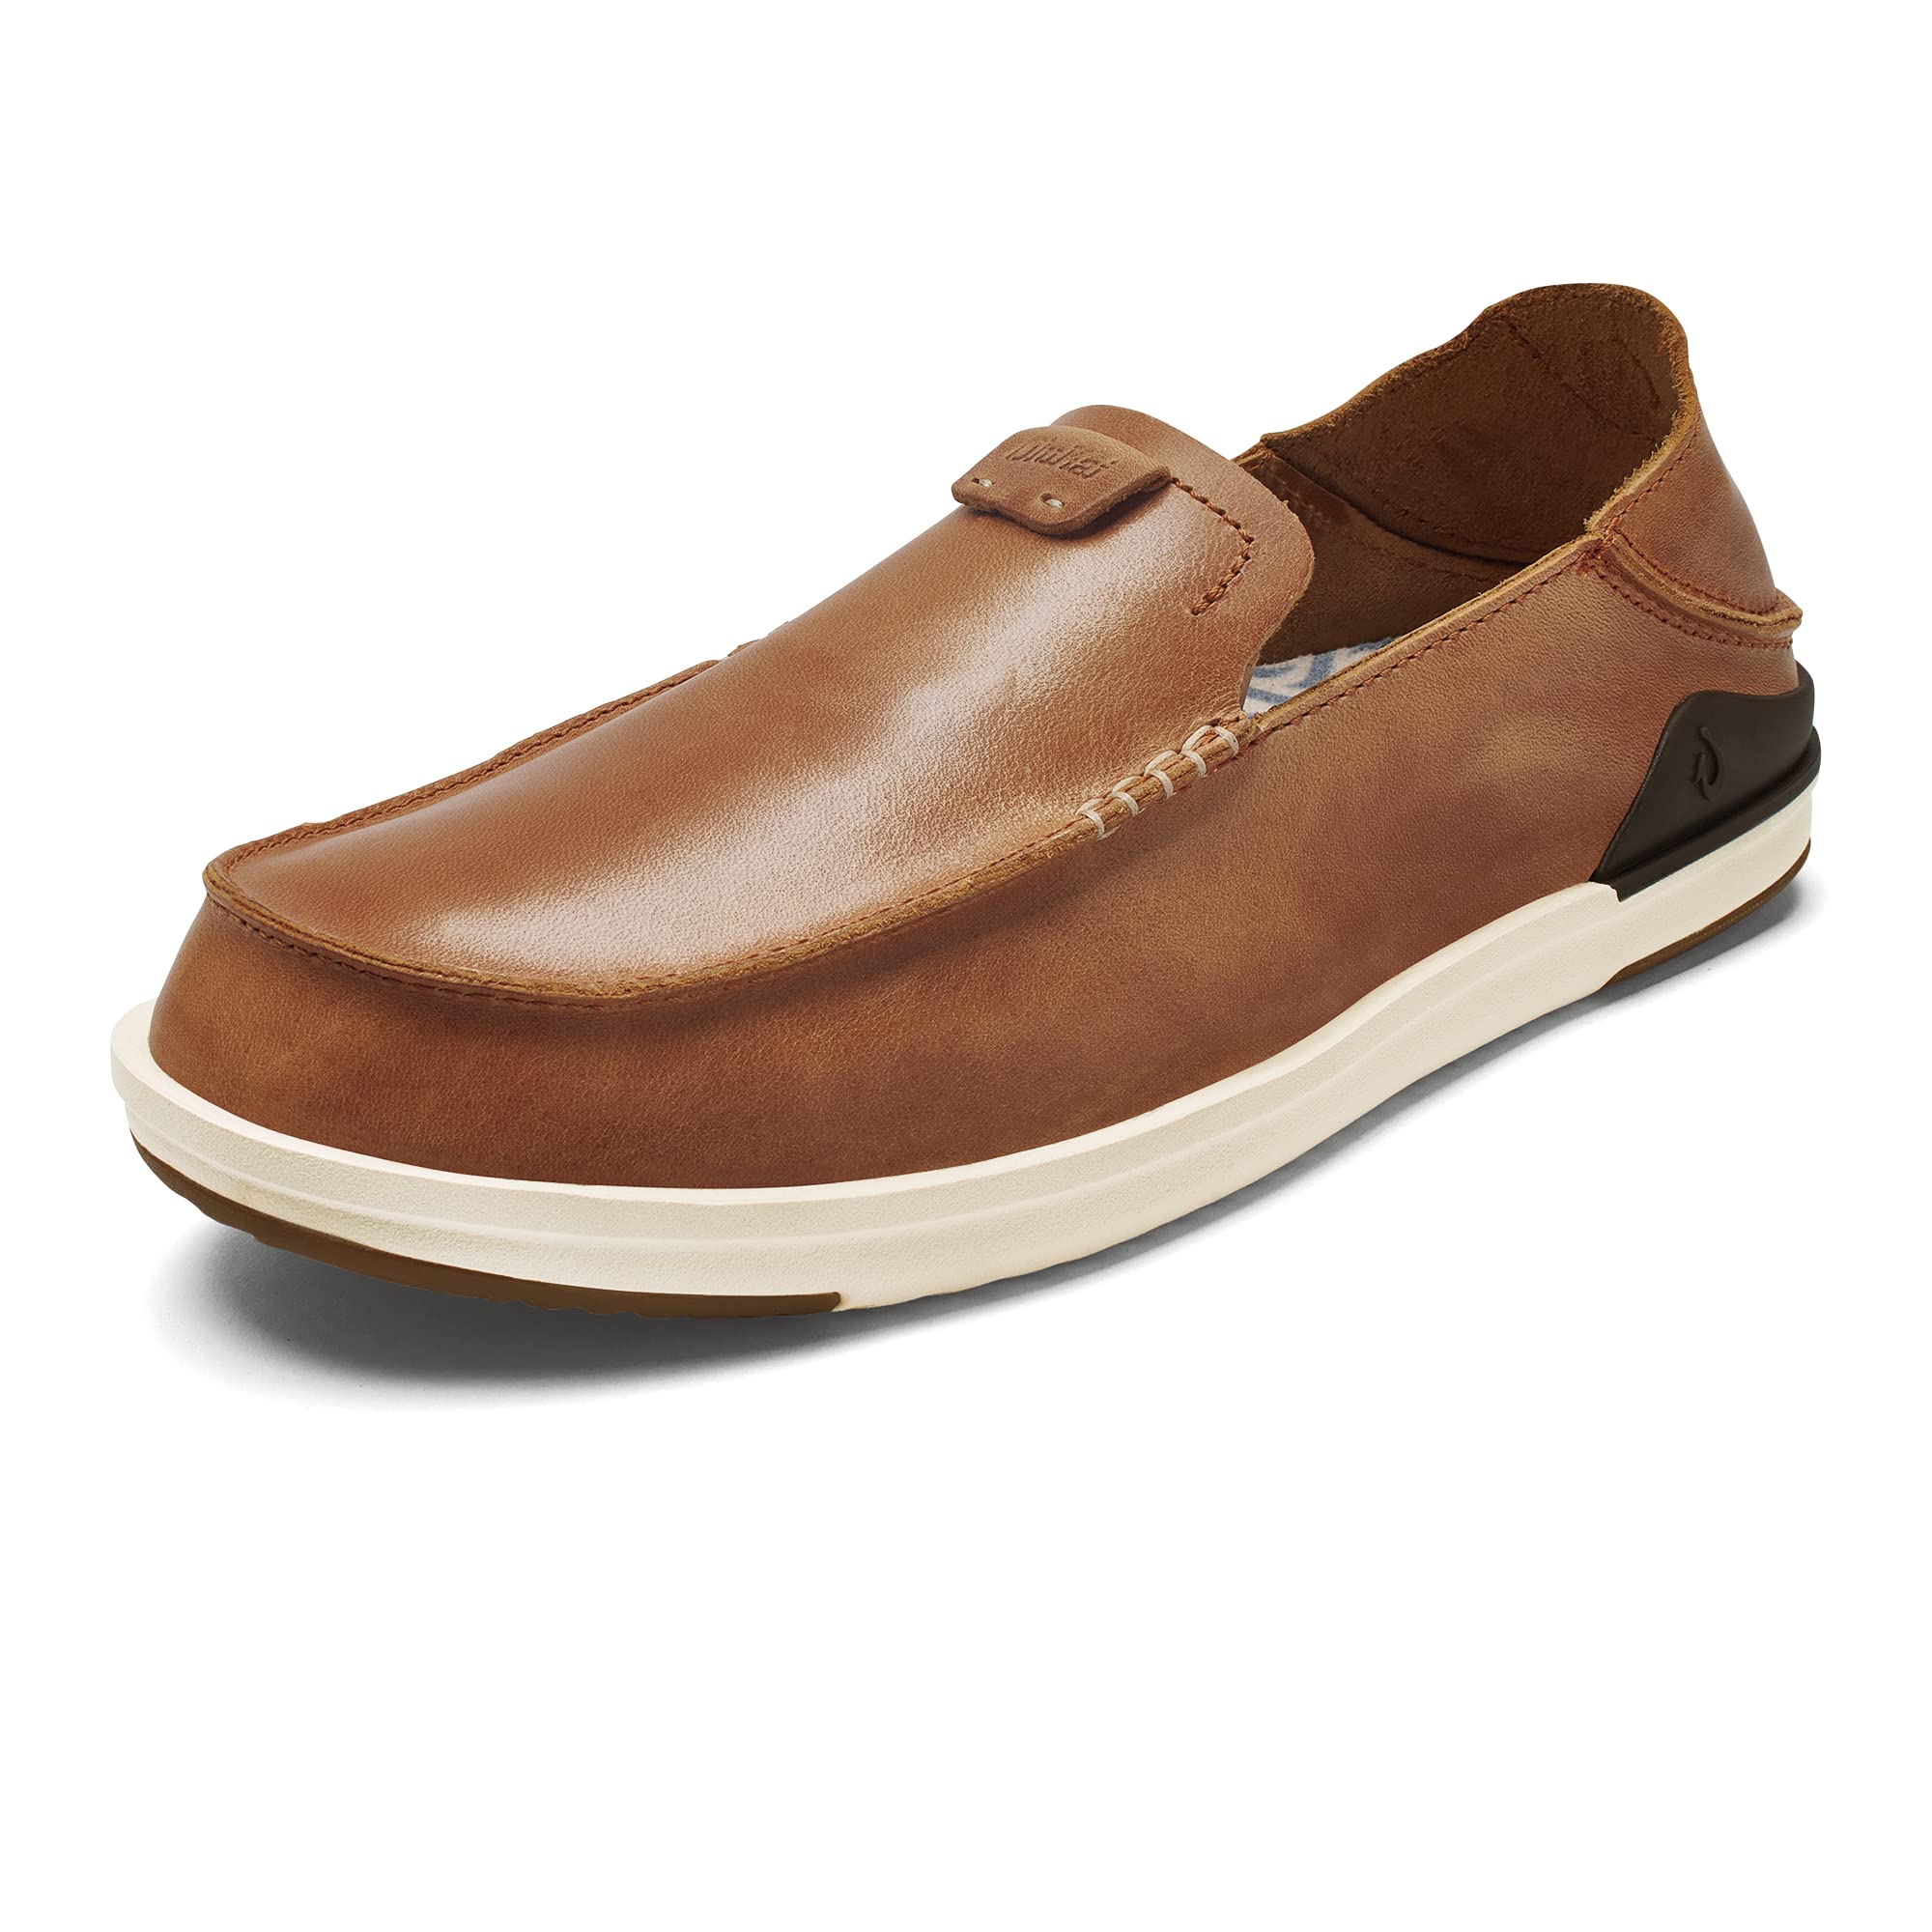 OLUKAI Kakaha Men's Slip-On Shoes, Full-Grain Leather Sneakers, Gel Insert for Comfort & Support, Comfort Fit & Wet Grip Rubber